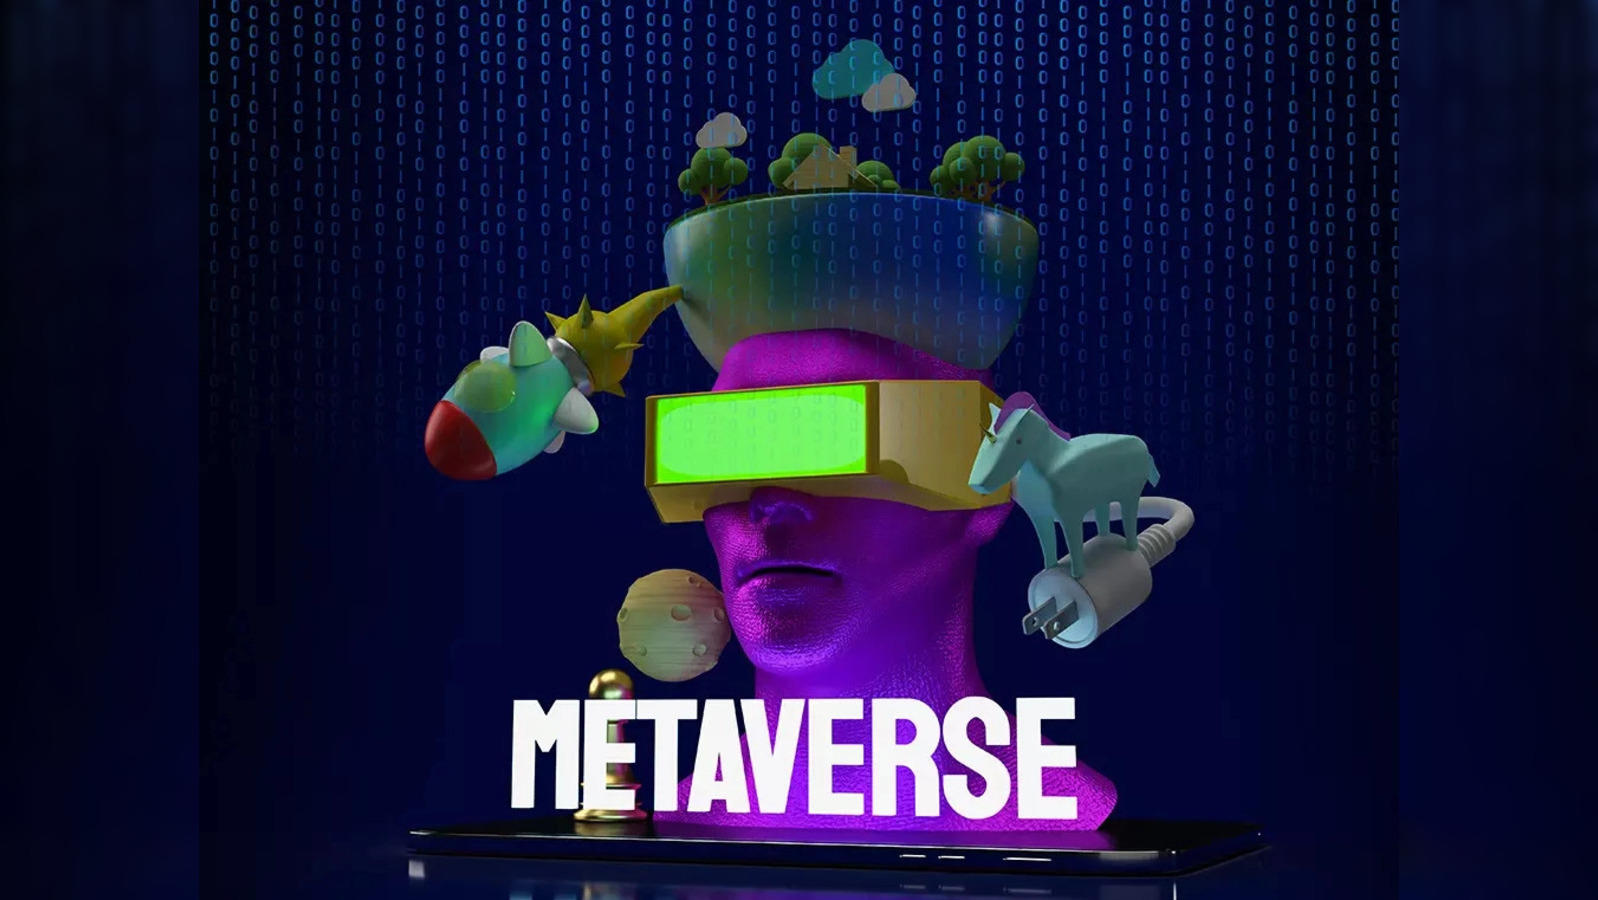 Low code platform for metaverse games